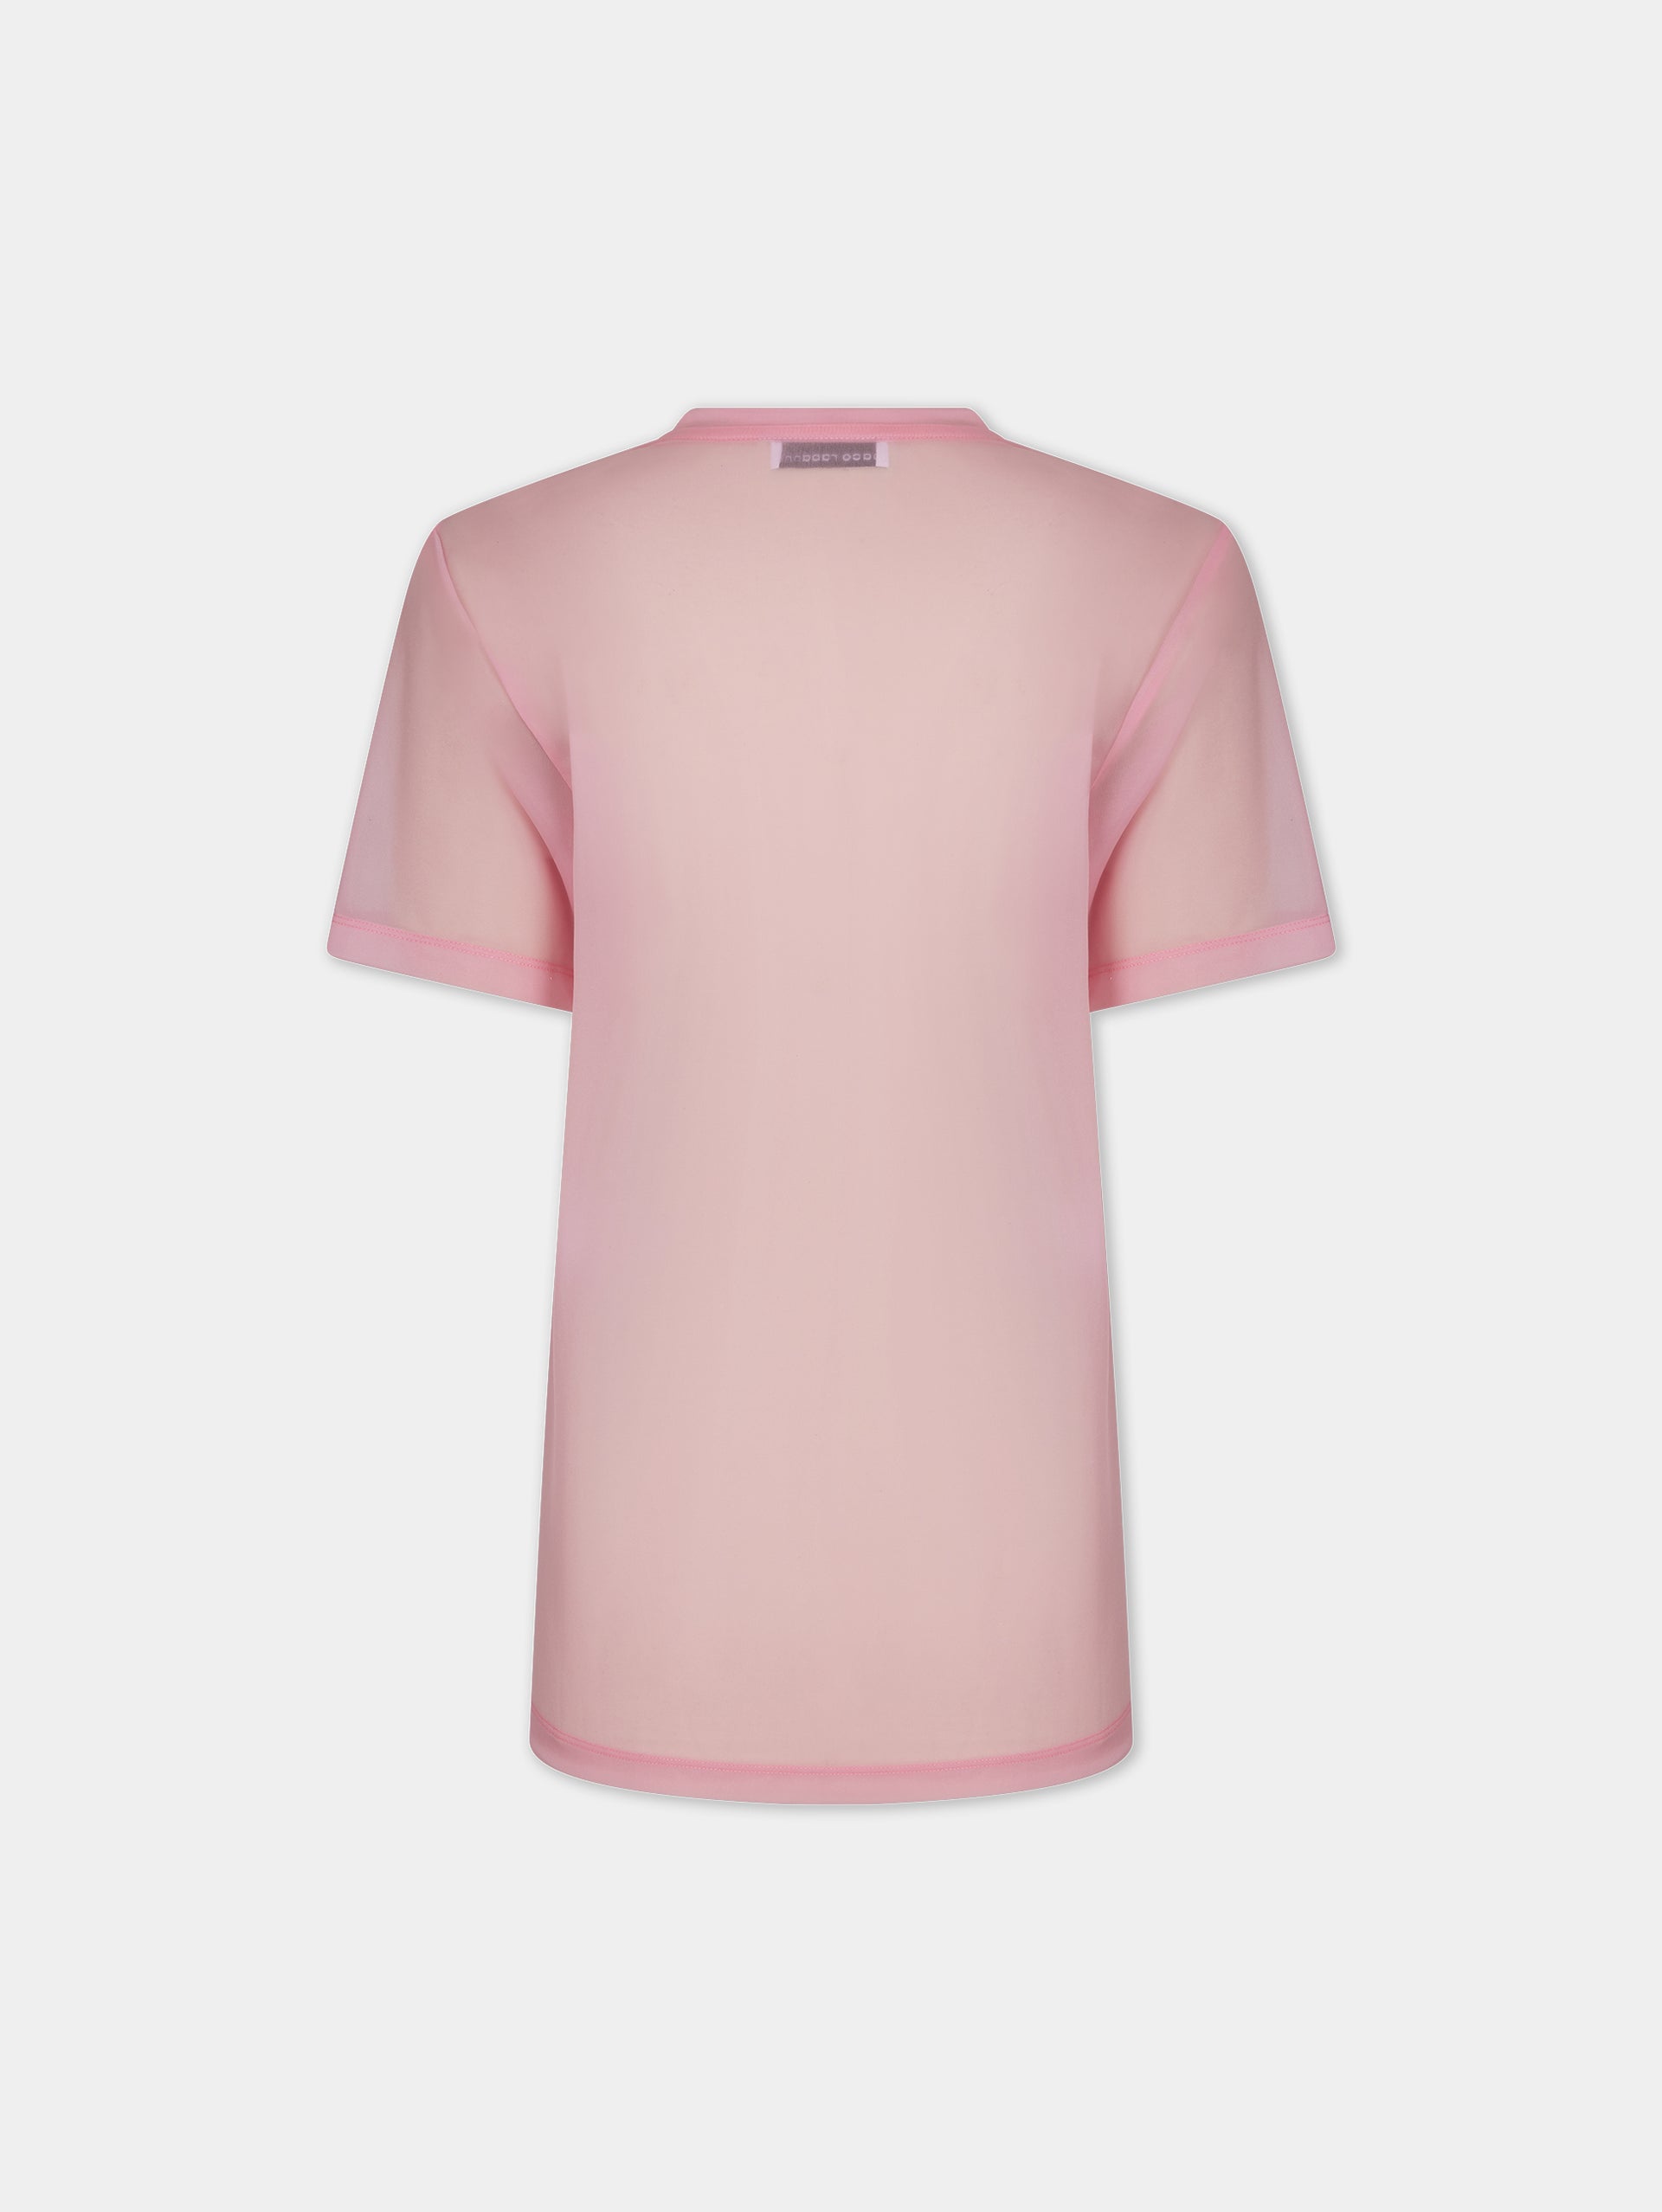 Pink Visconti-inspired T-shirt